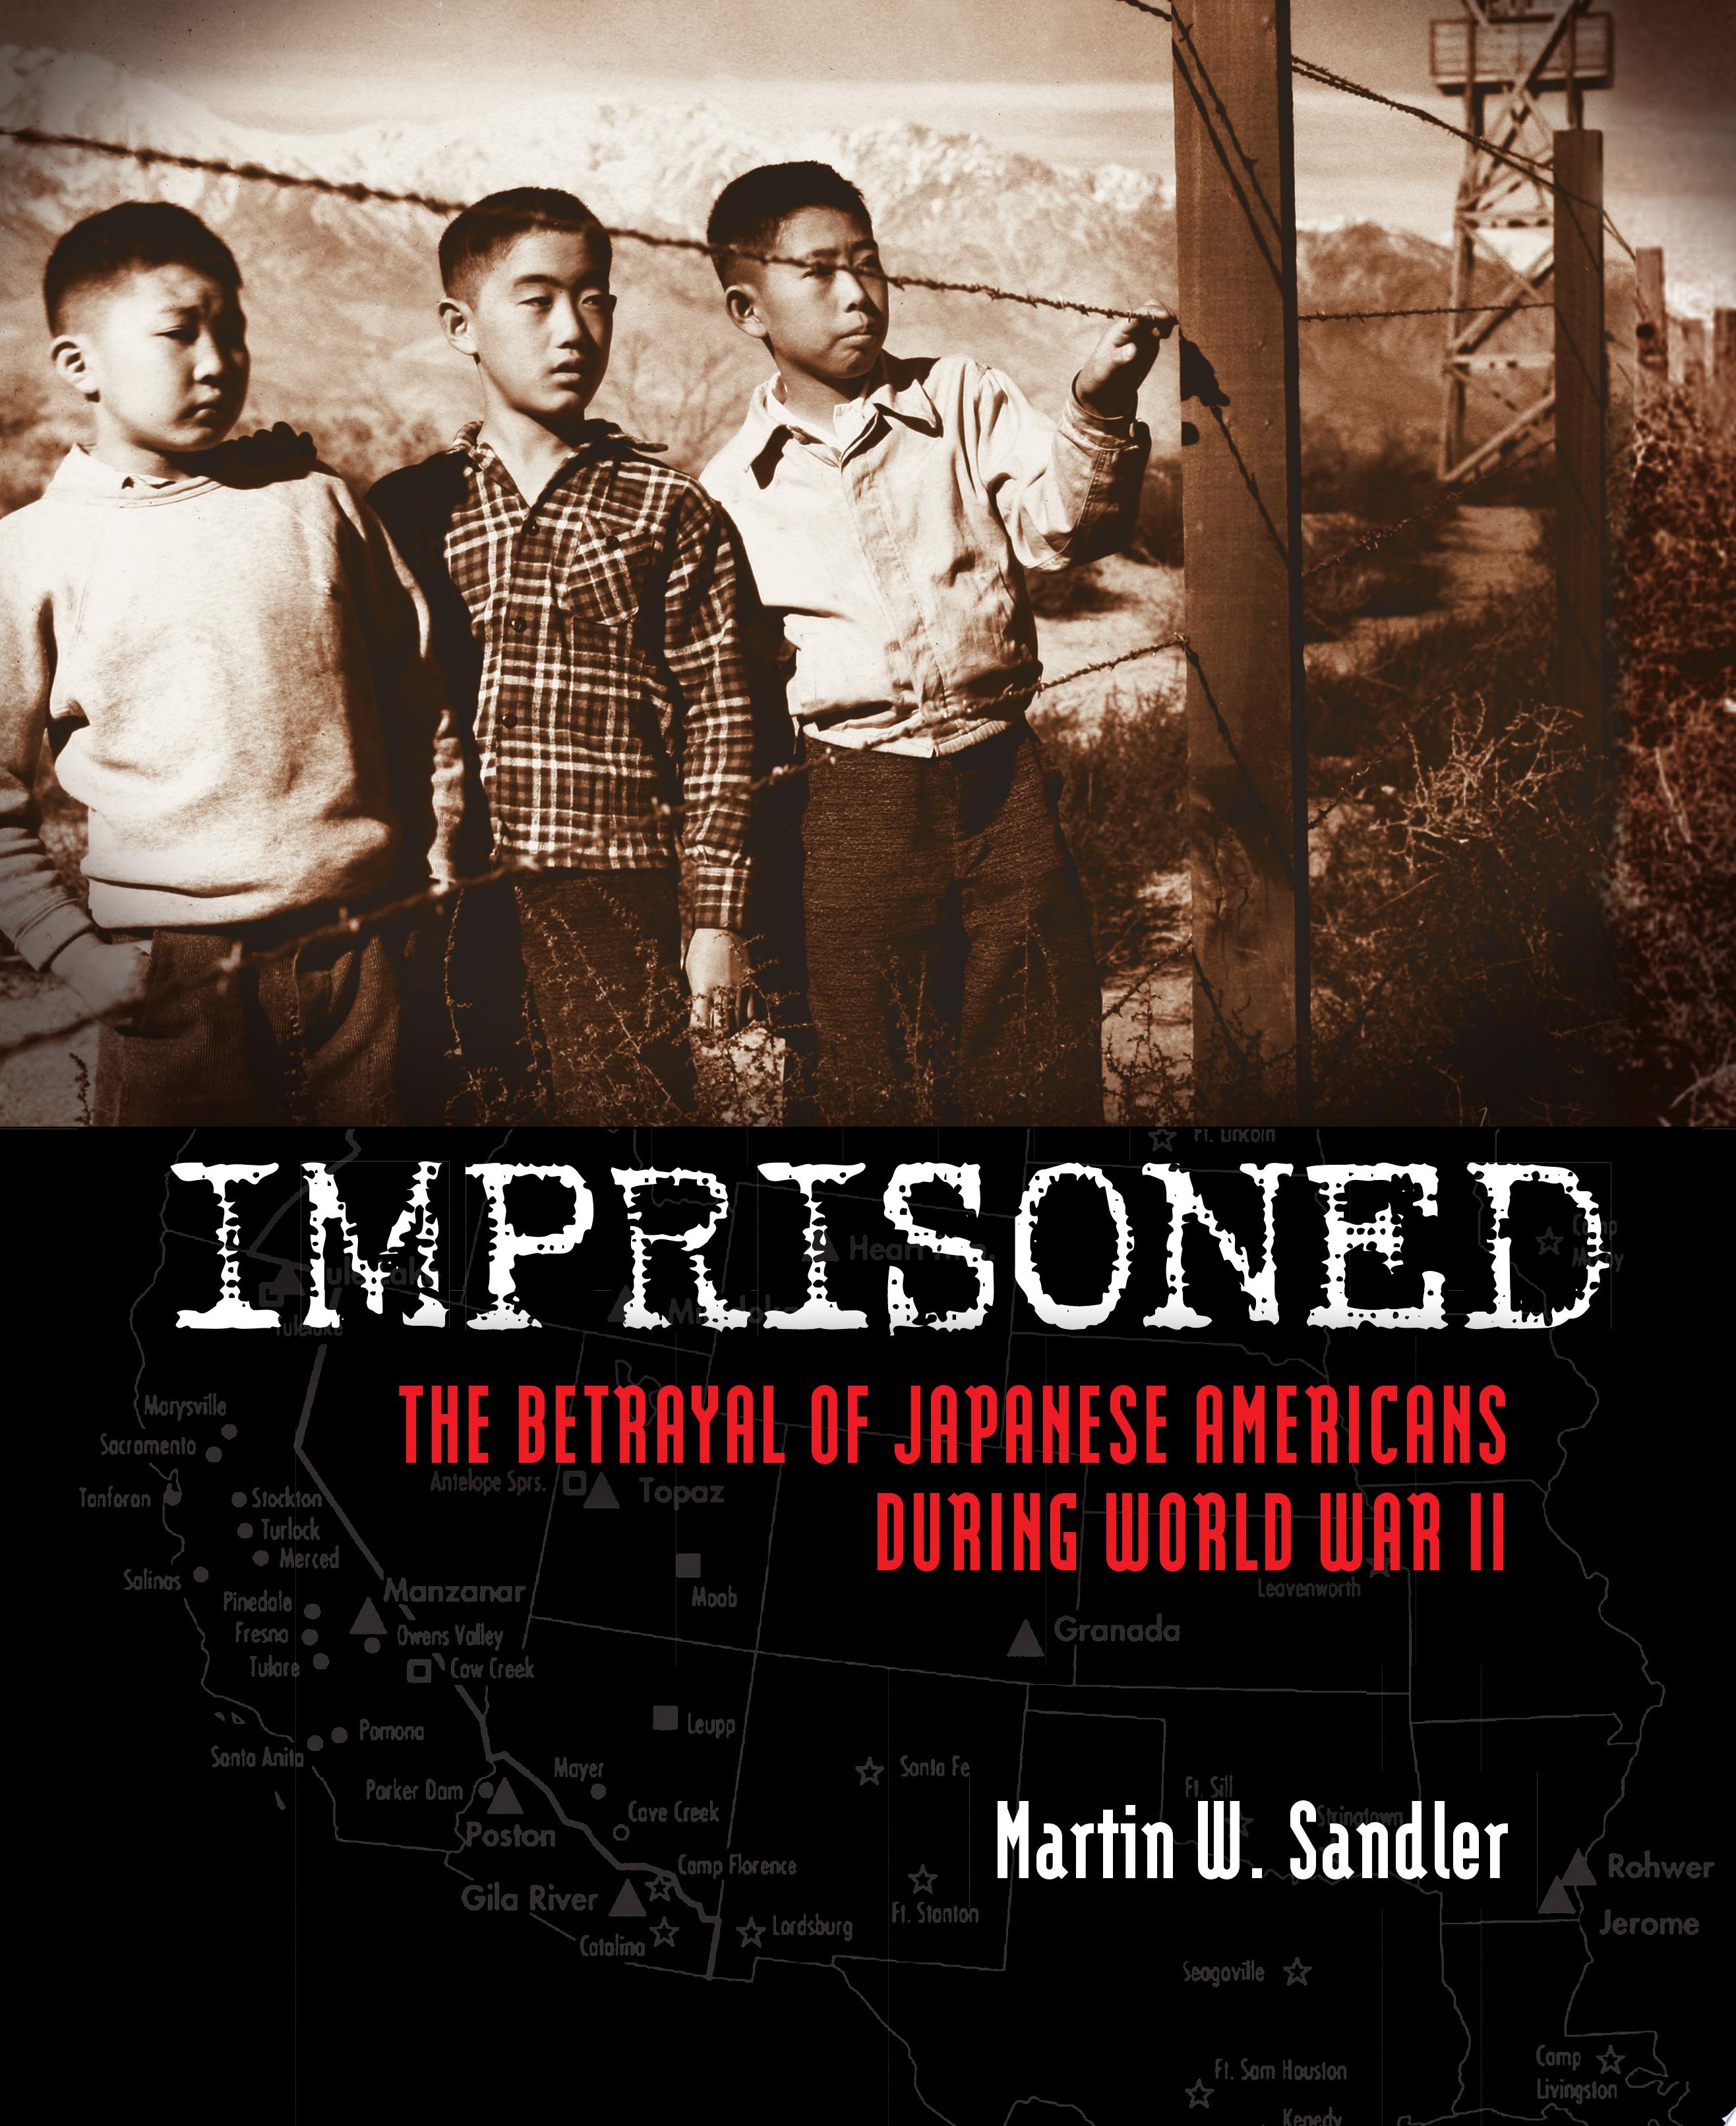 Image for "Imprisoned"